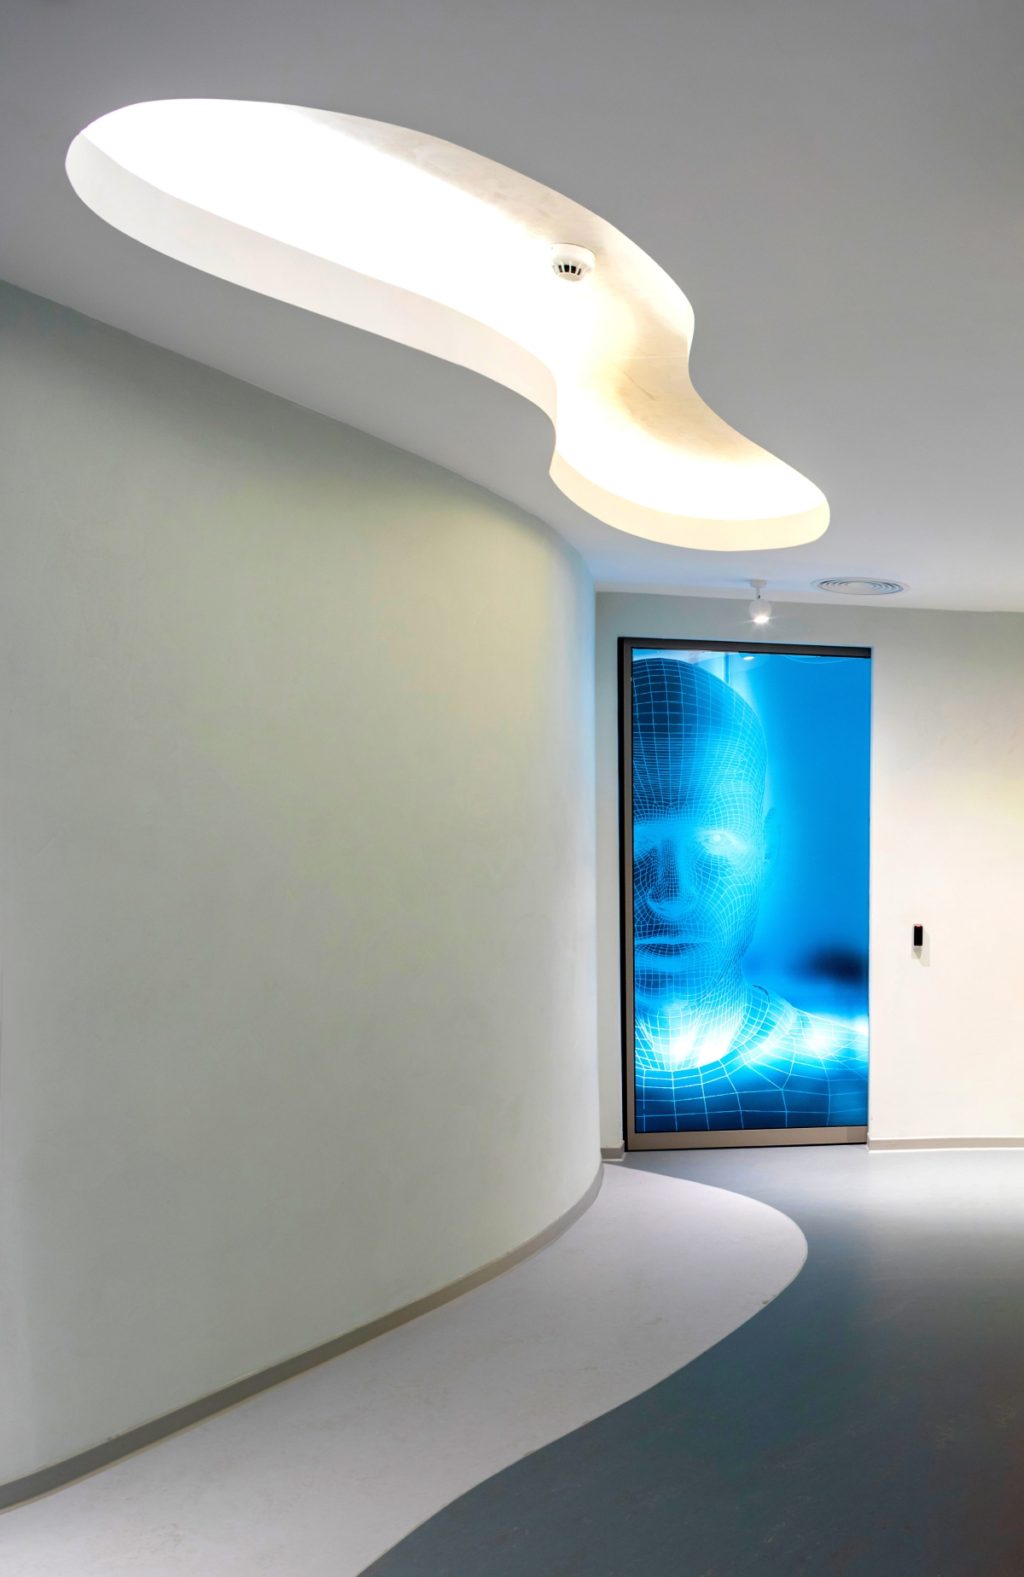 Κέντρο ομορφιάς Blu Clinic από την AAD Architects